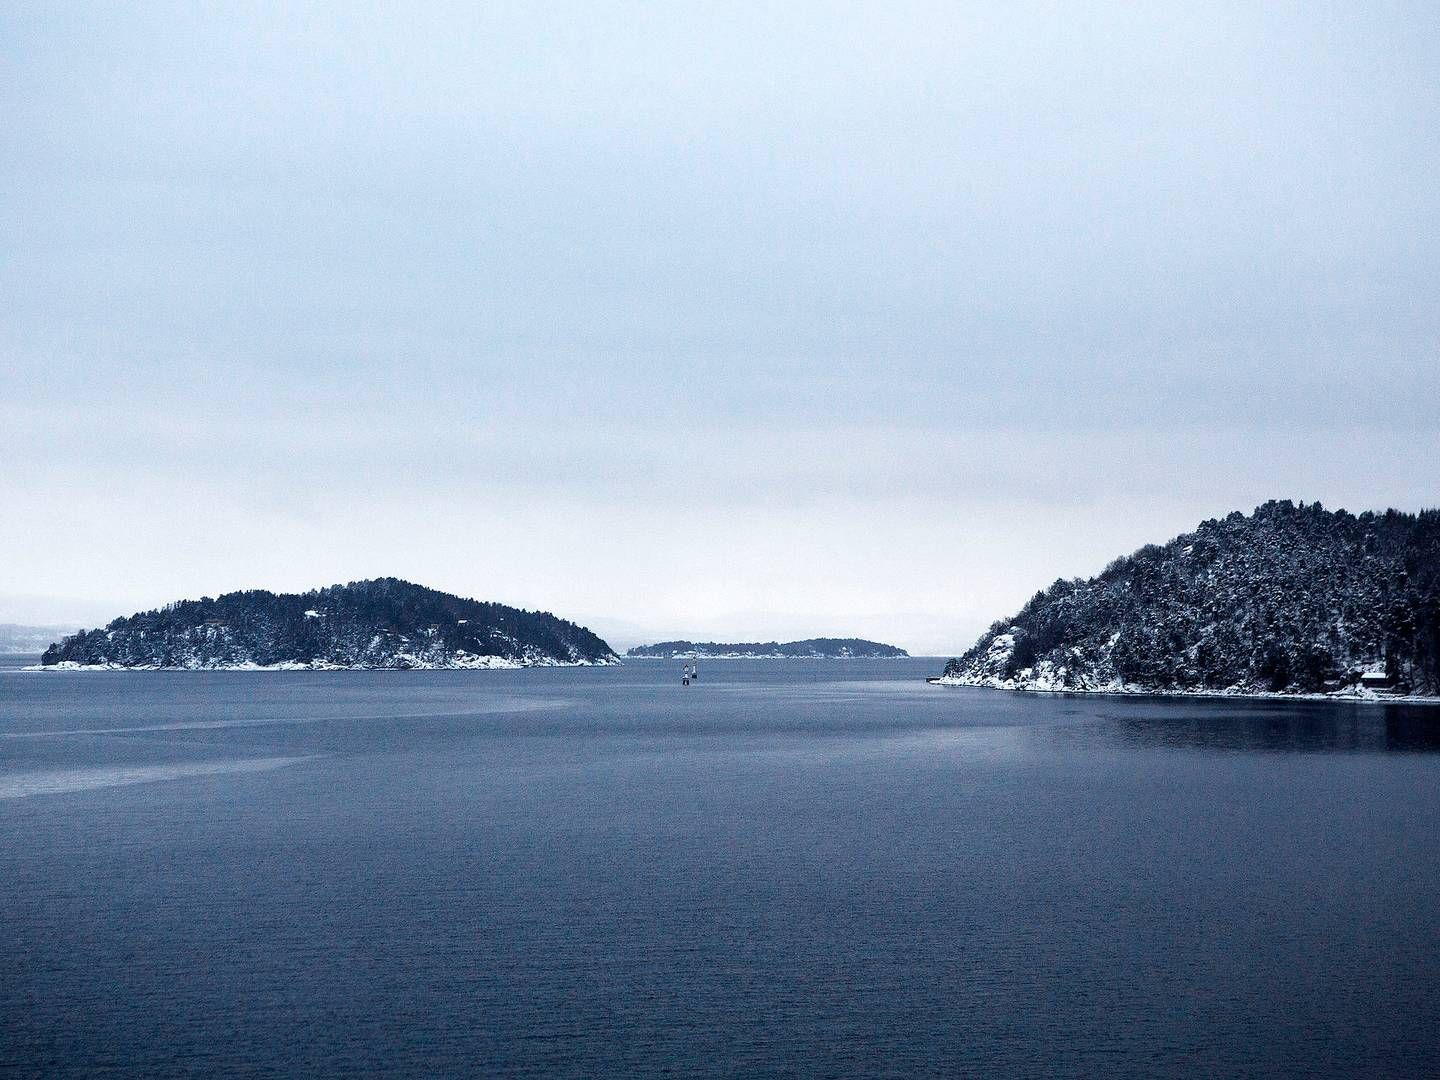 Oslofjorden hvor et af de tre beskadigede strømkabler lækker olie. | Foto: Thomas Borberg/Politiken/Ritzau Scanpix